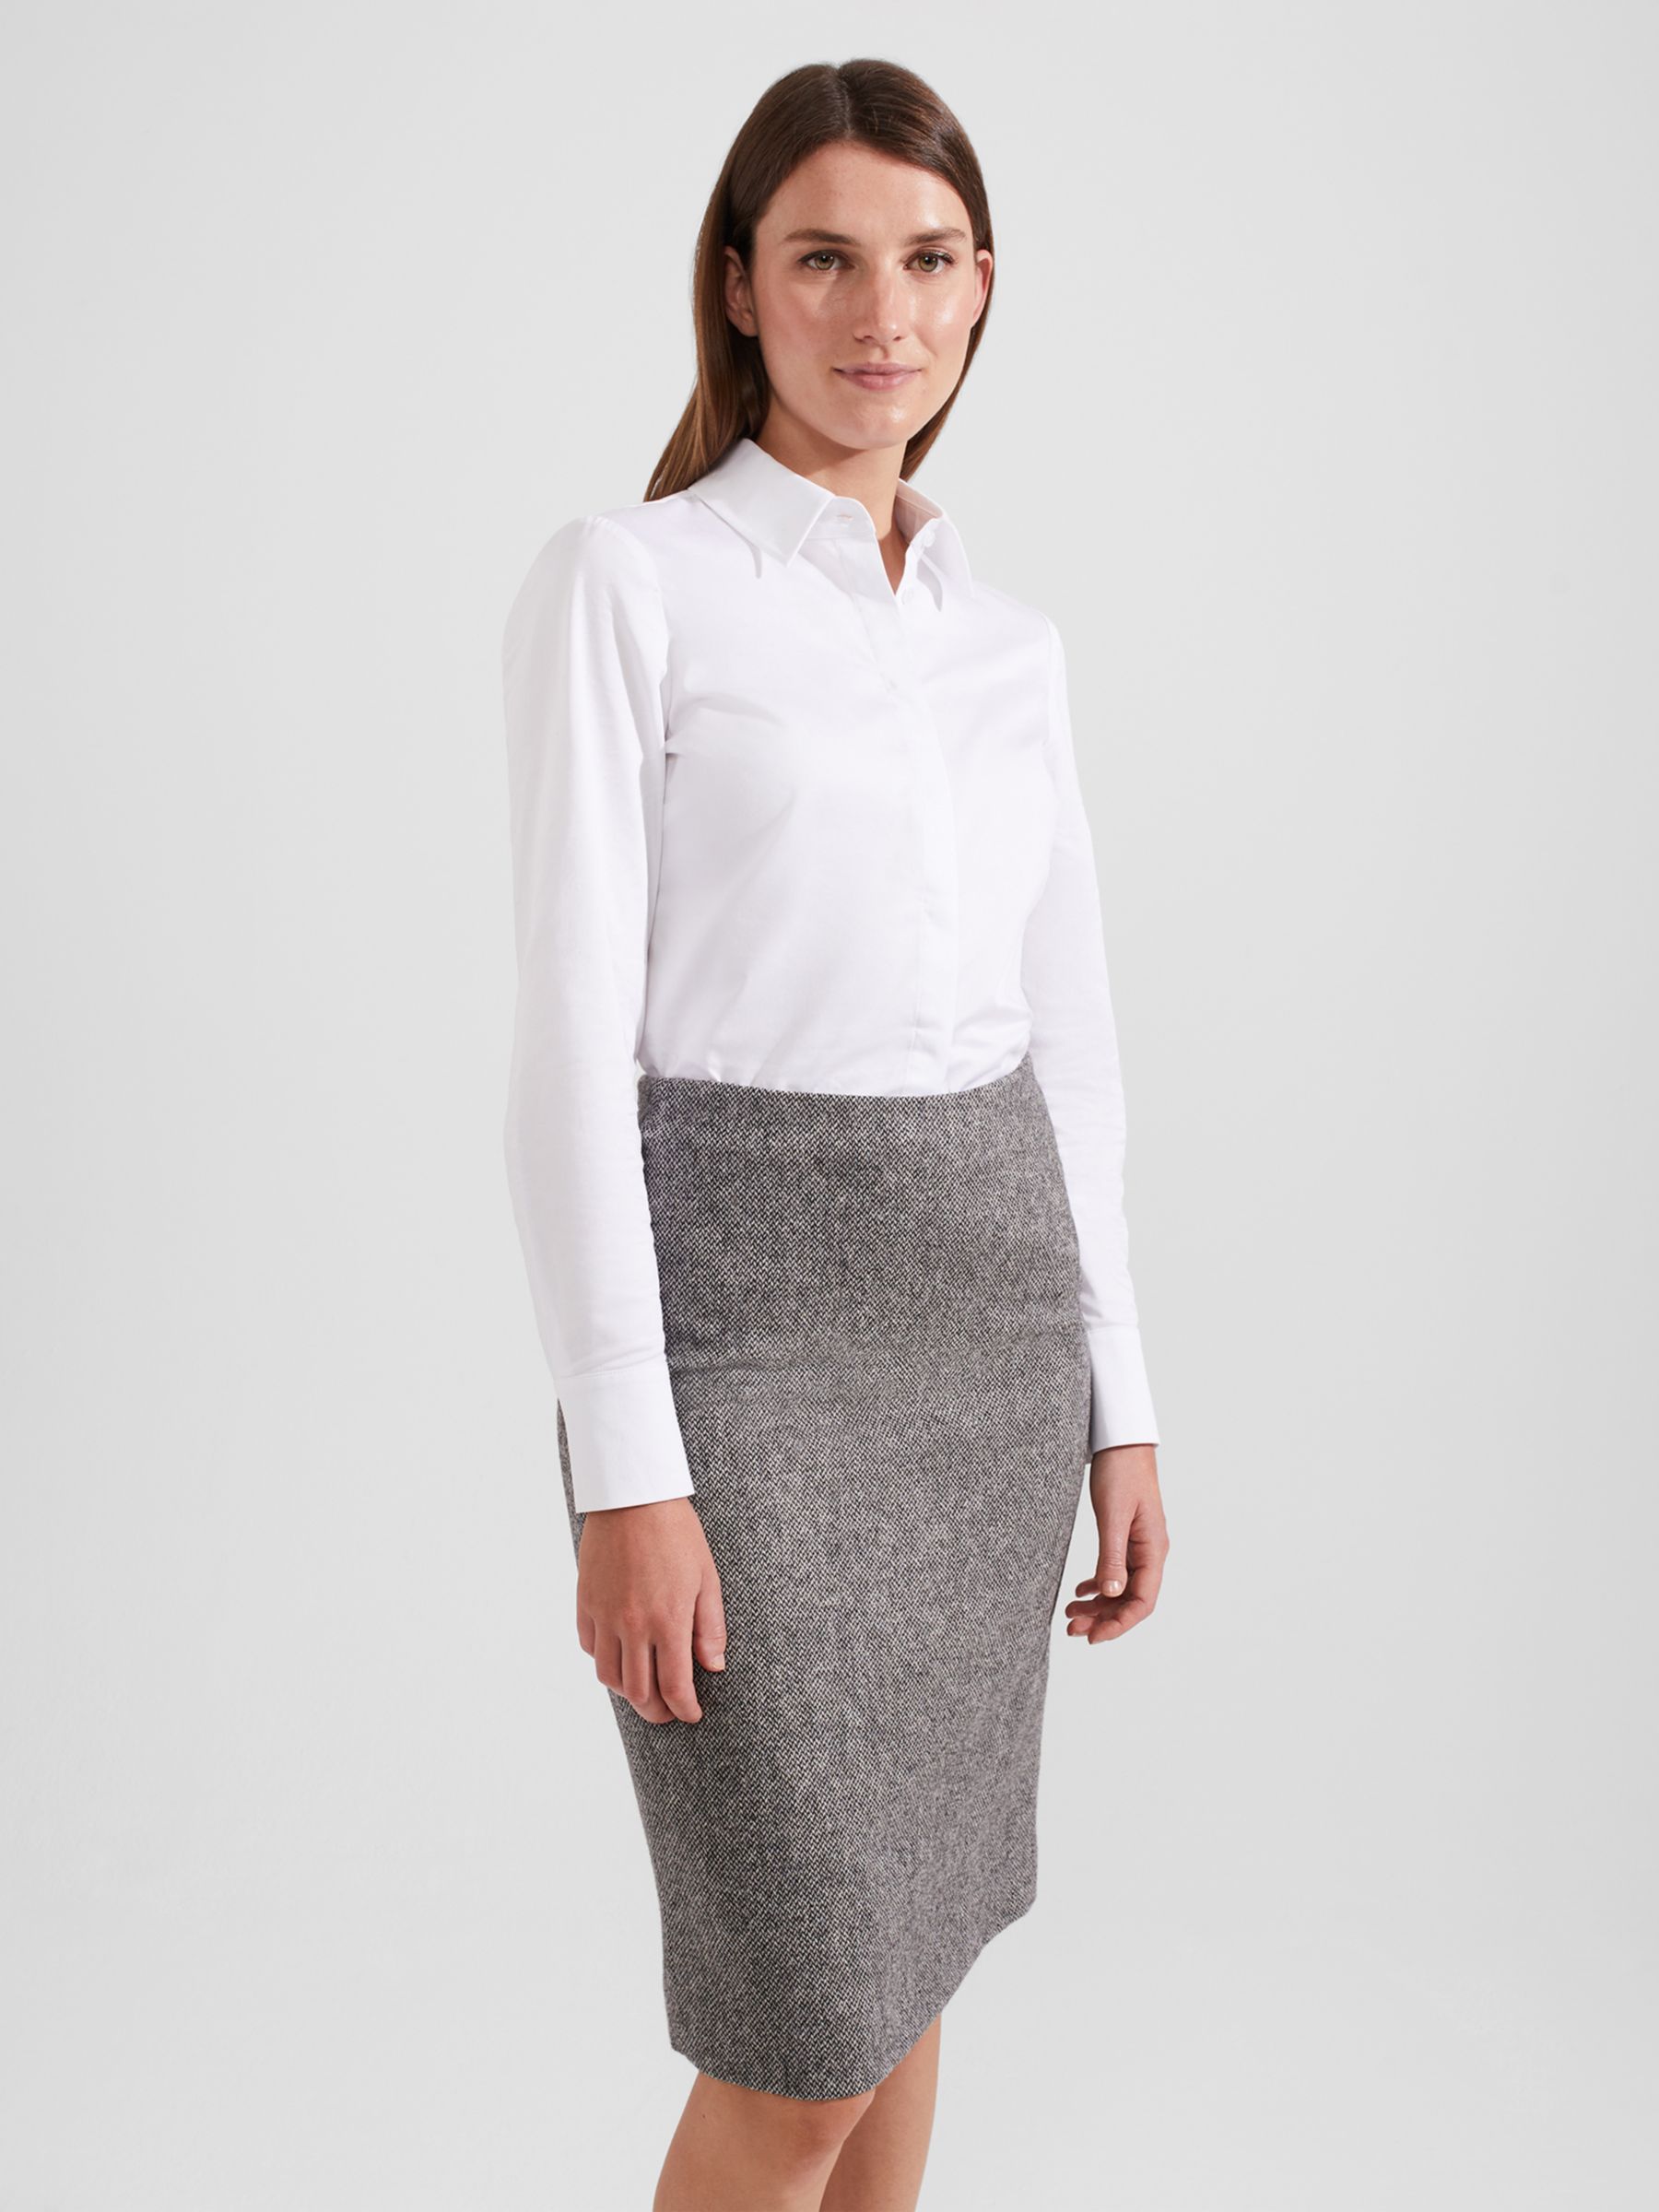 Hobbs Elle Skirt, Black/White at John Lewis & Partners